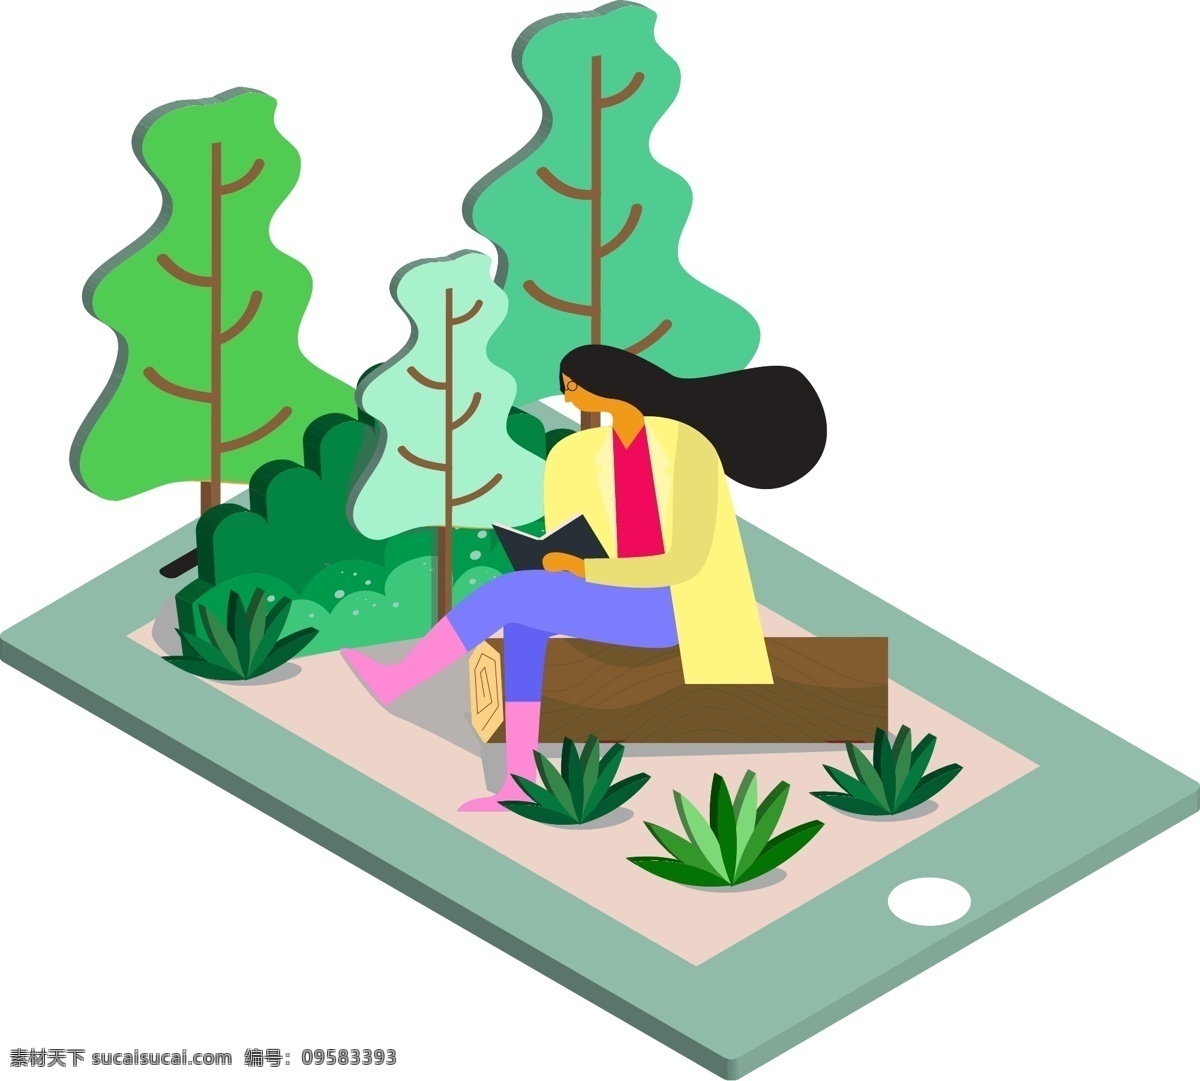 手机 上 看书 女孩 矢量图 卡通的 手绘 2.5d 手机上的场景 看书的女孩 树木 草 植物 人物 平面 海报